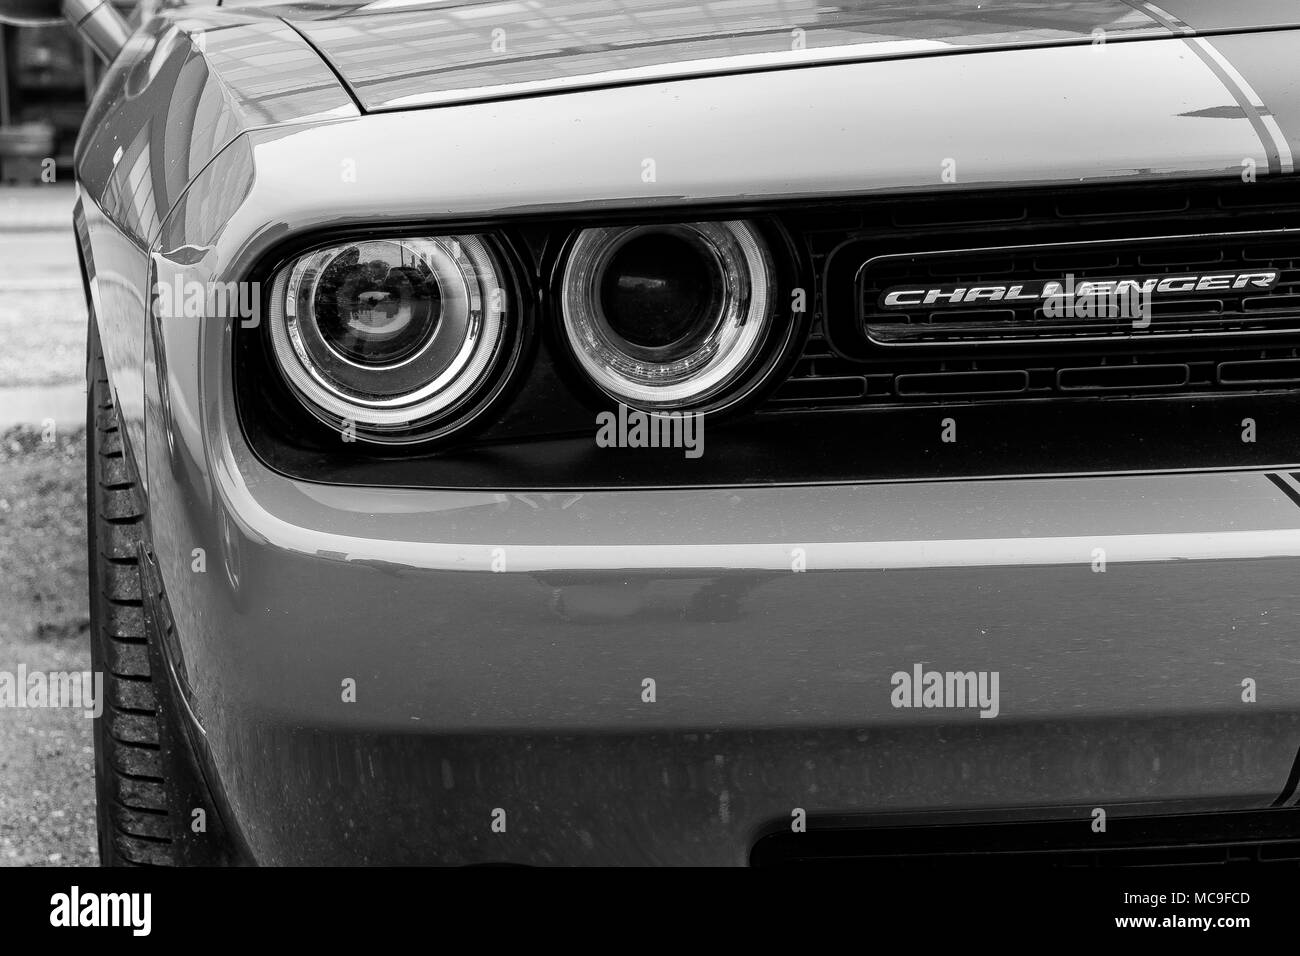 2018 Dodge Challenger, mit wütenden intensive Augen in einfachen Schwarz und Weiß. Stockfoto